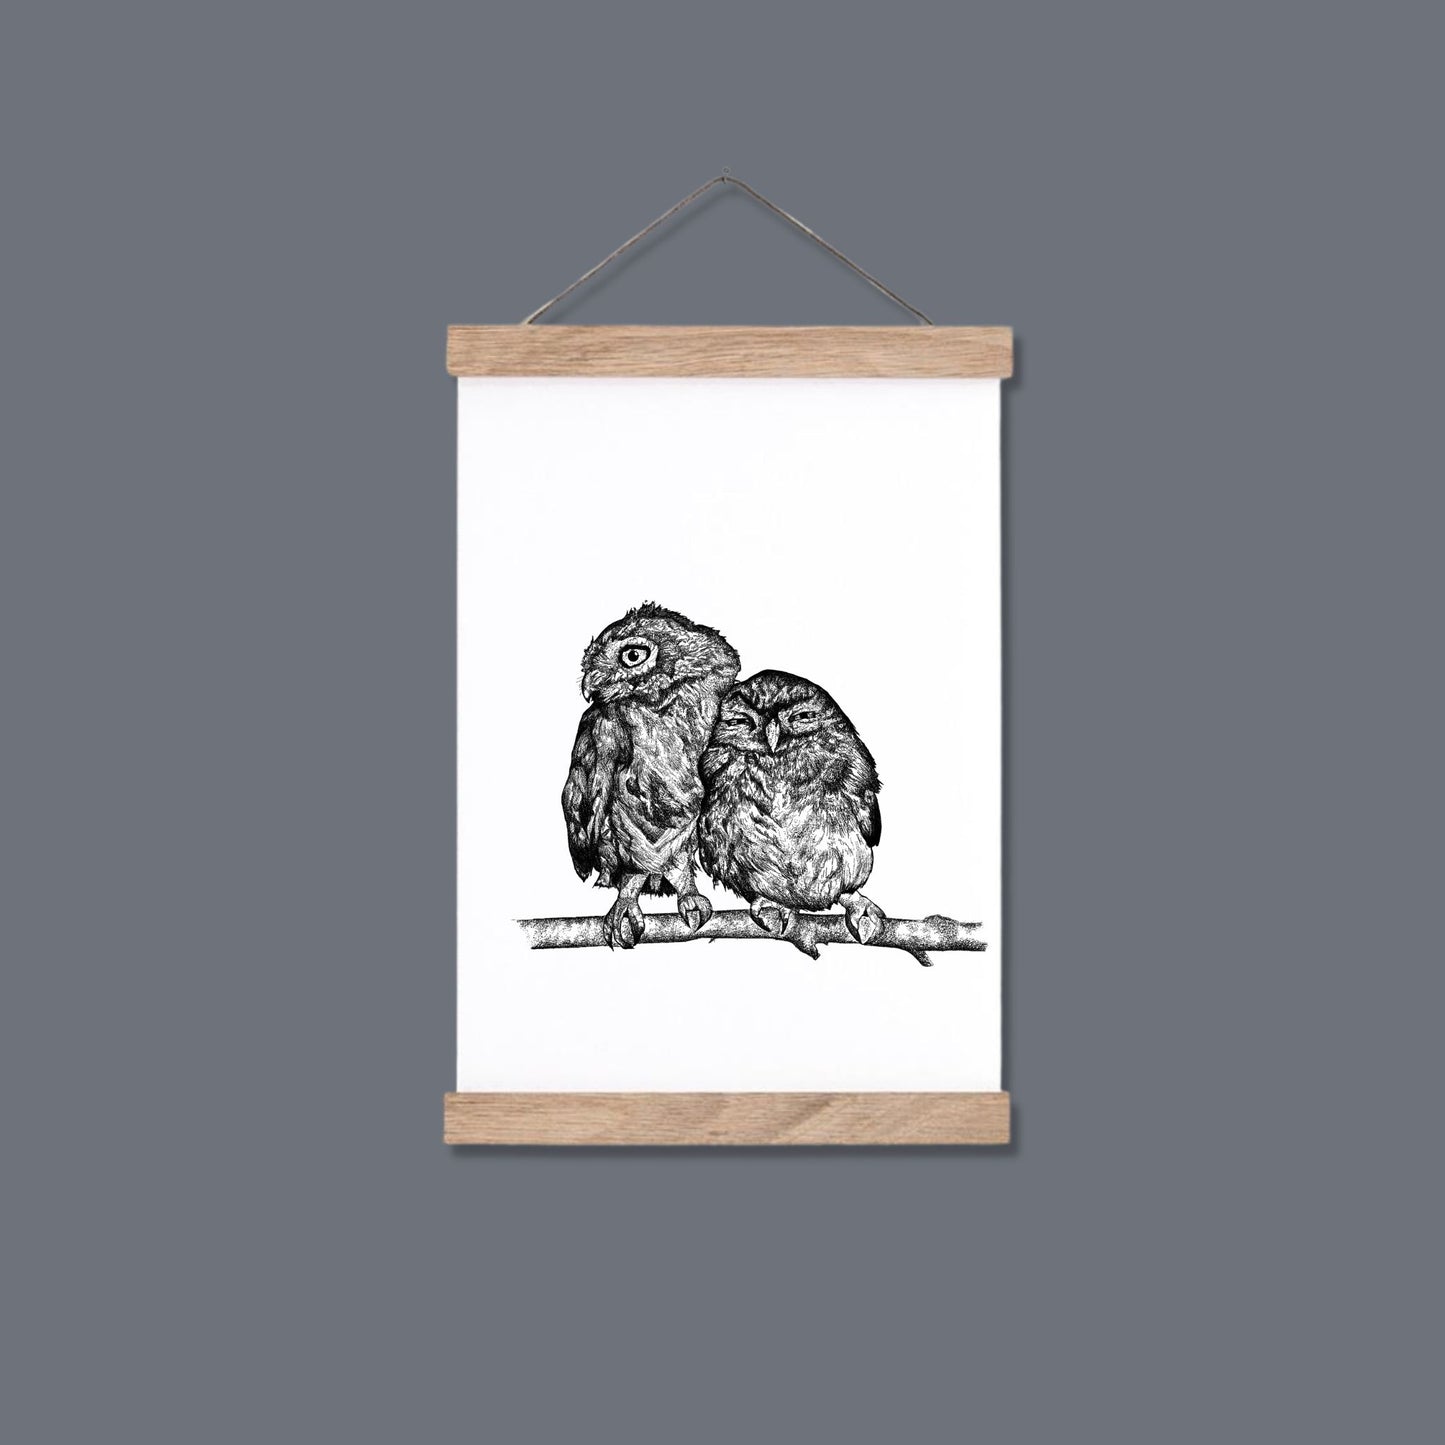 Cuddling Owls Print